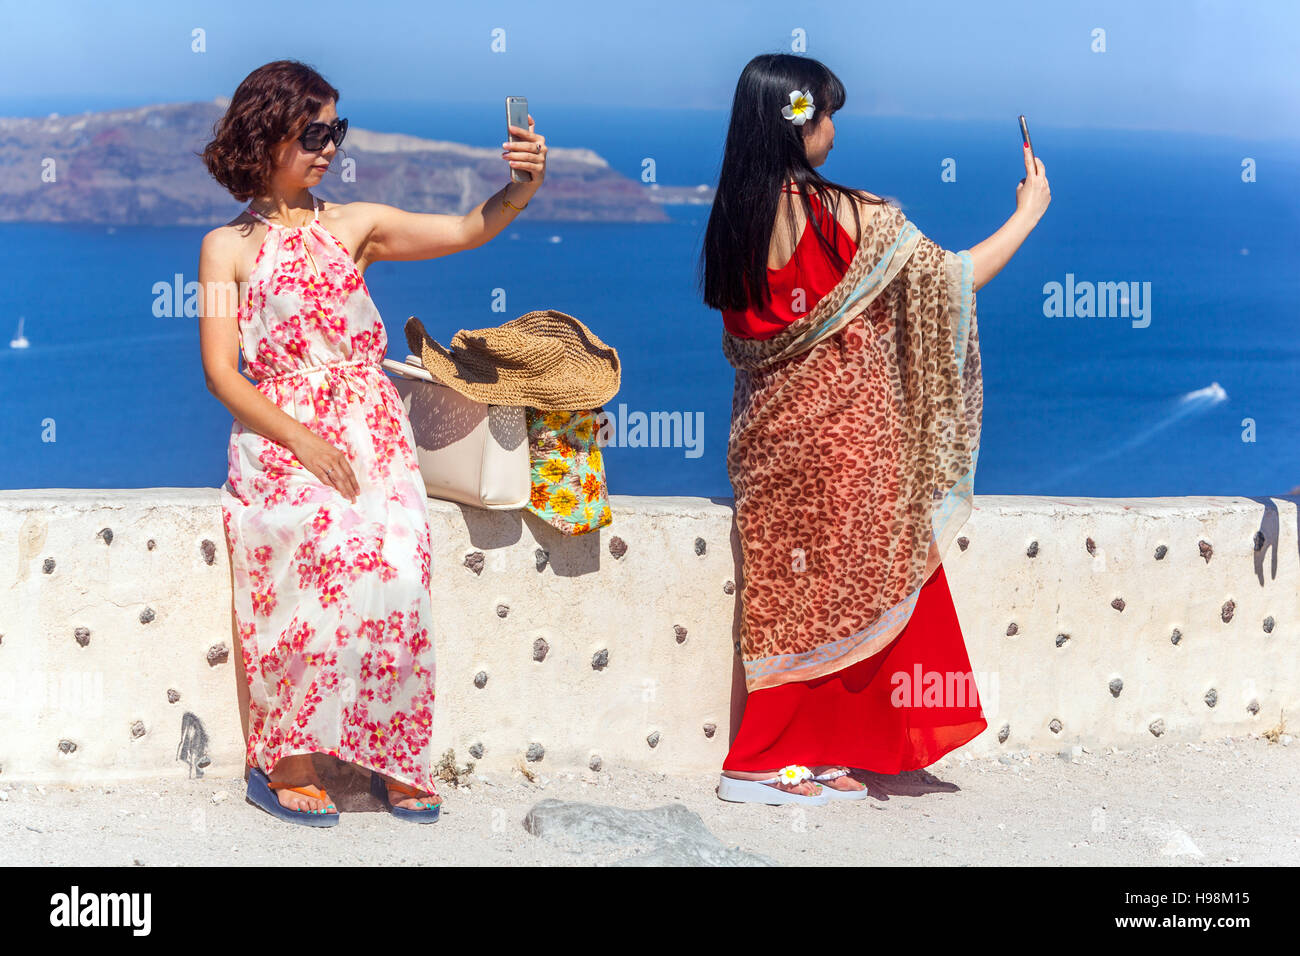 Asiatische Touristen nehmen selfie mit Smartphone-Kamera über Caldera, Santorini, griechische Insel, Griechenland Touristen Stockfoto